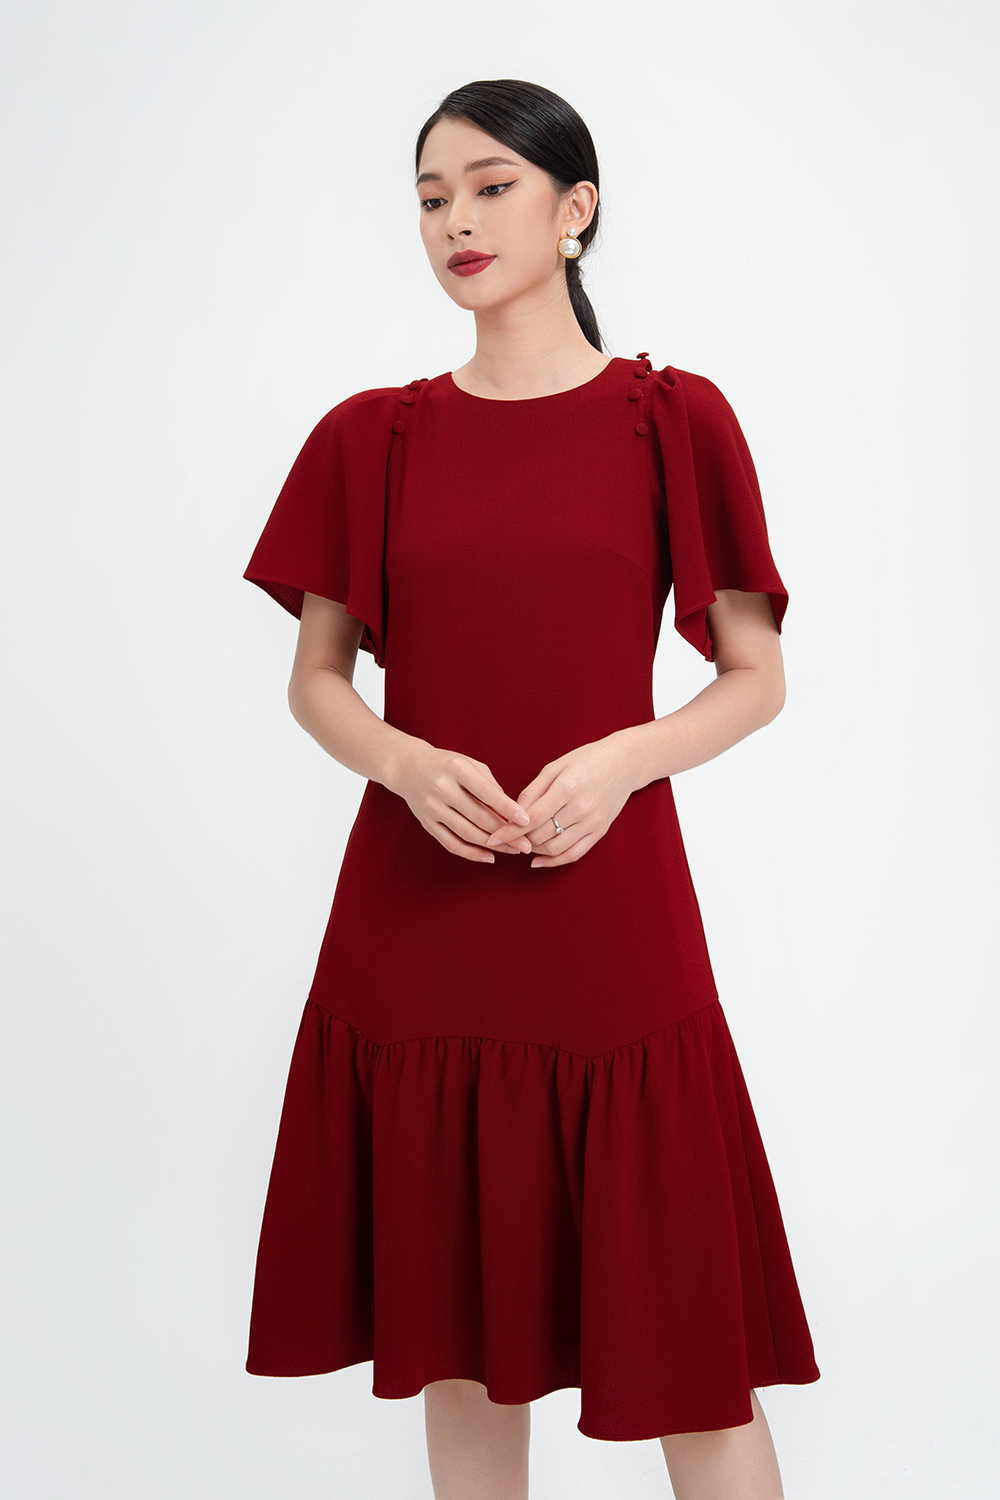 Đầm váy dài màu đỏ cổ sơ mi kết nút - Bán sỉ thời trang mỹ phẩm